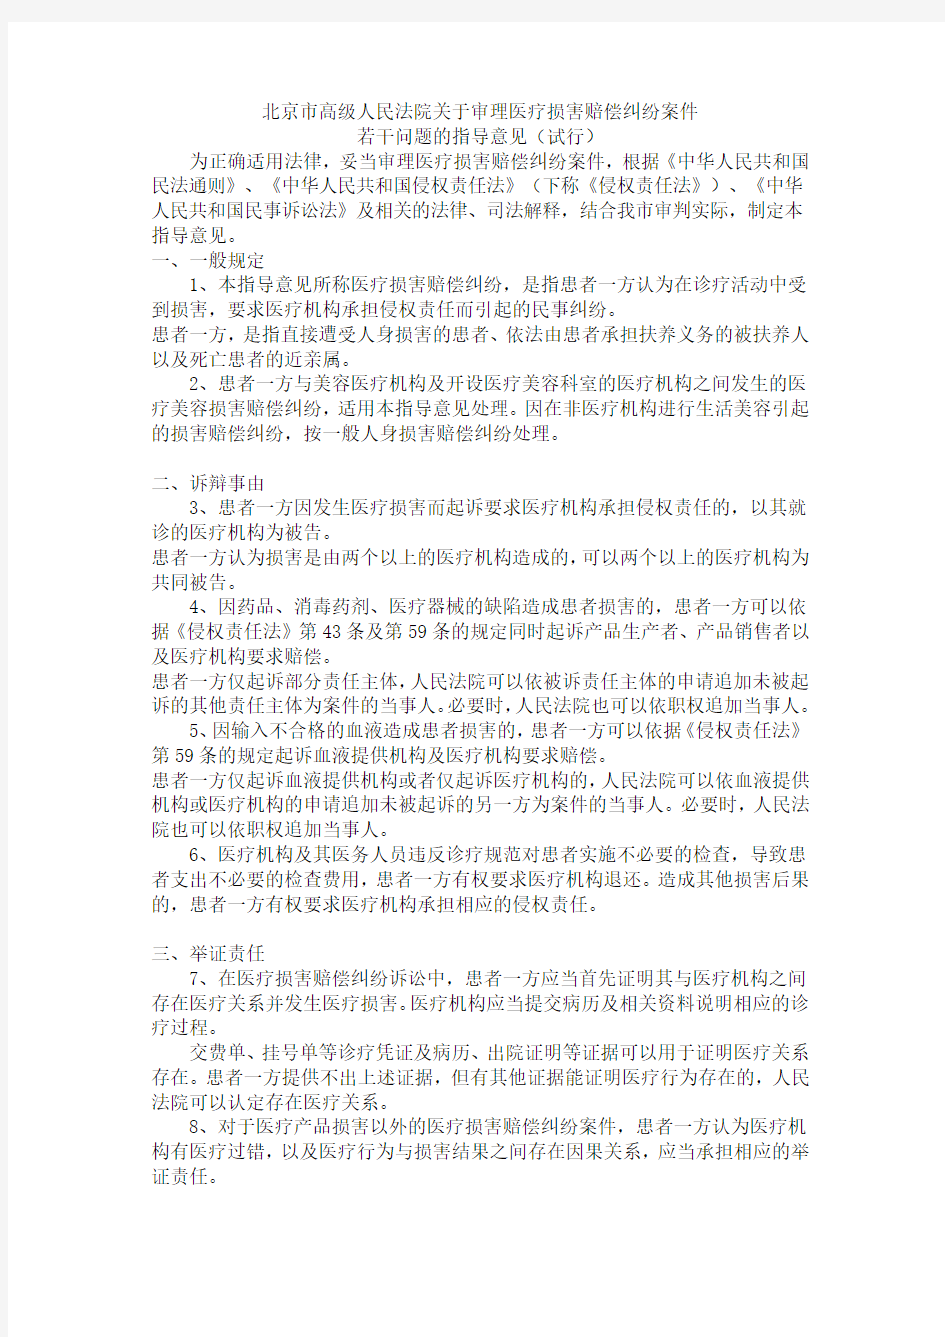 北京市高级人民法院关于审理医疗损害赔偿纠纷案件若干问题的指导意见